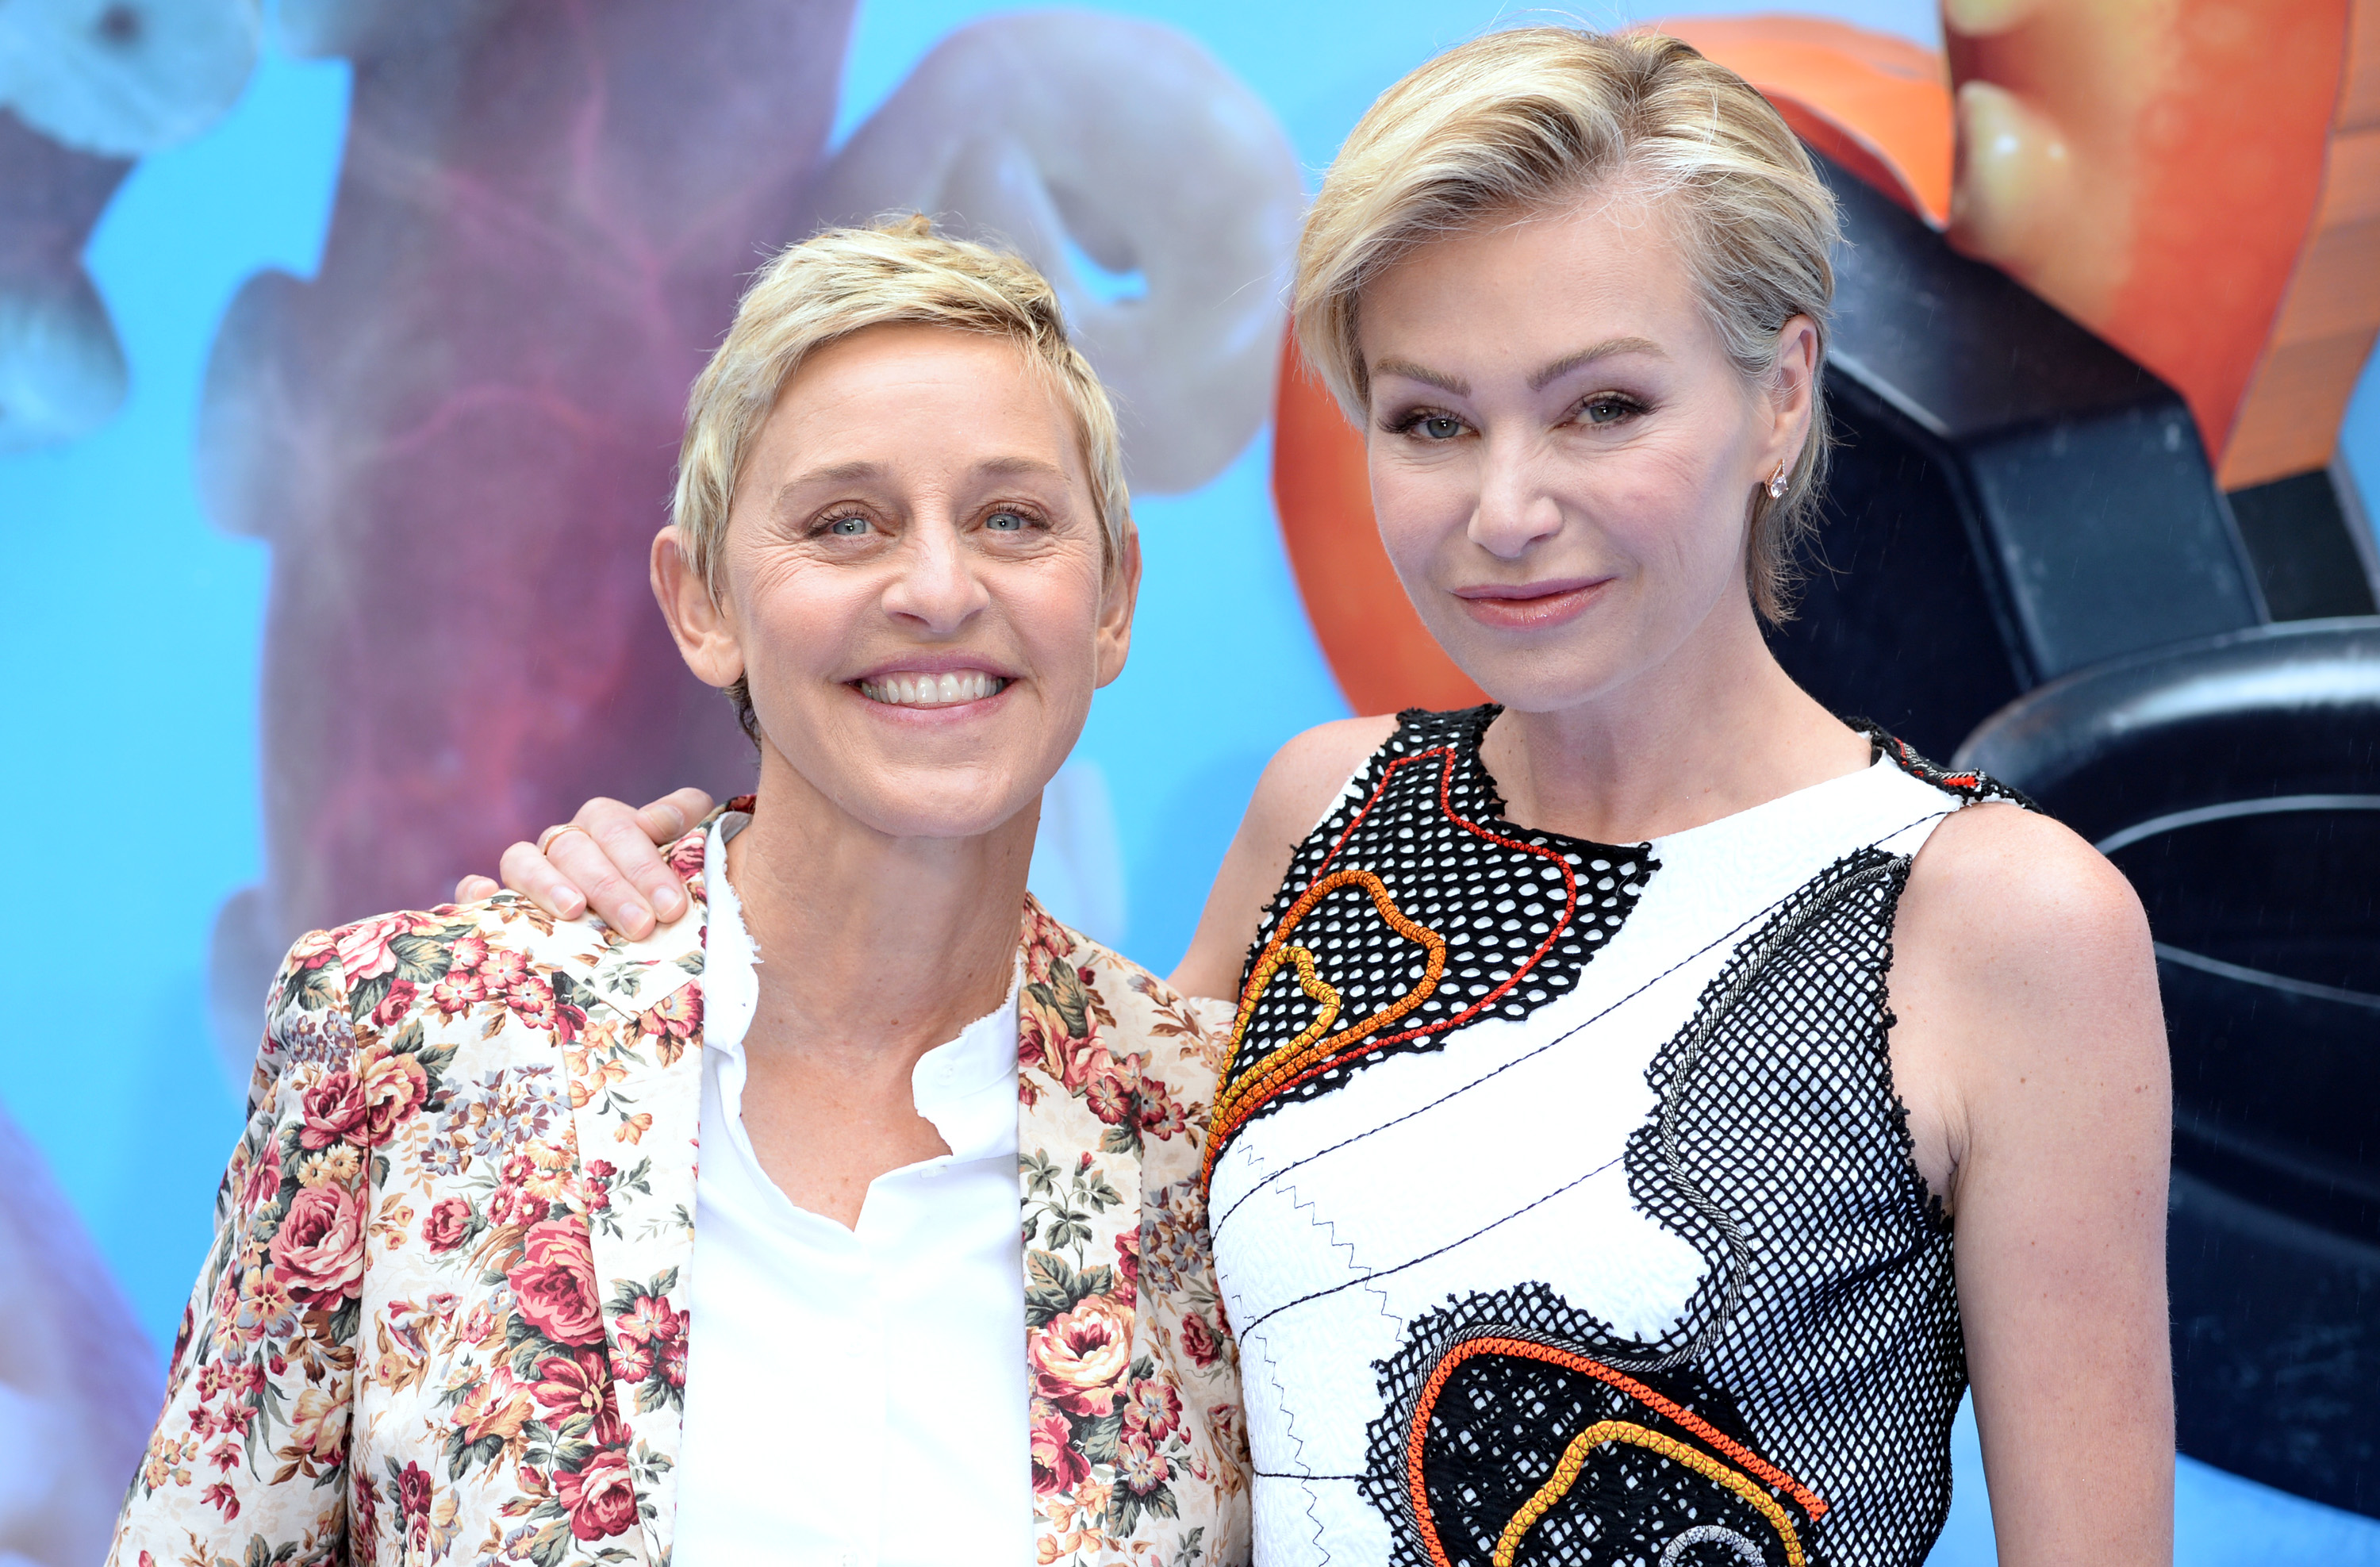 Ellen DeGeneres Opens up About Never Having Kids With Wife Portia De Rossi